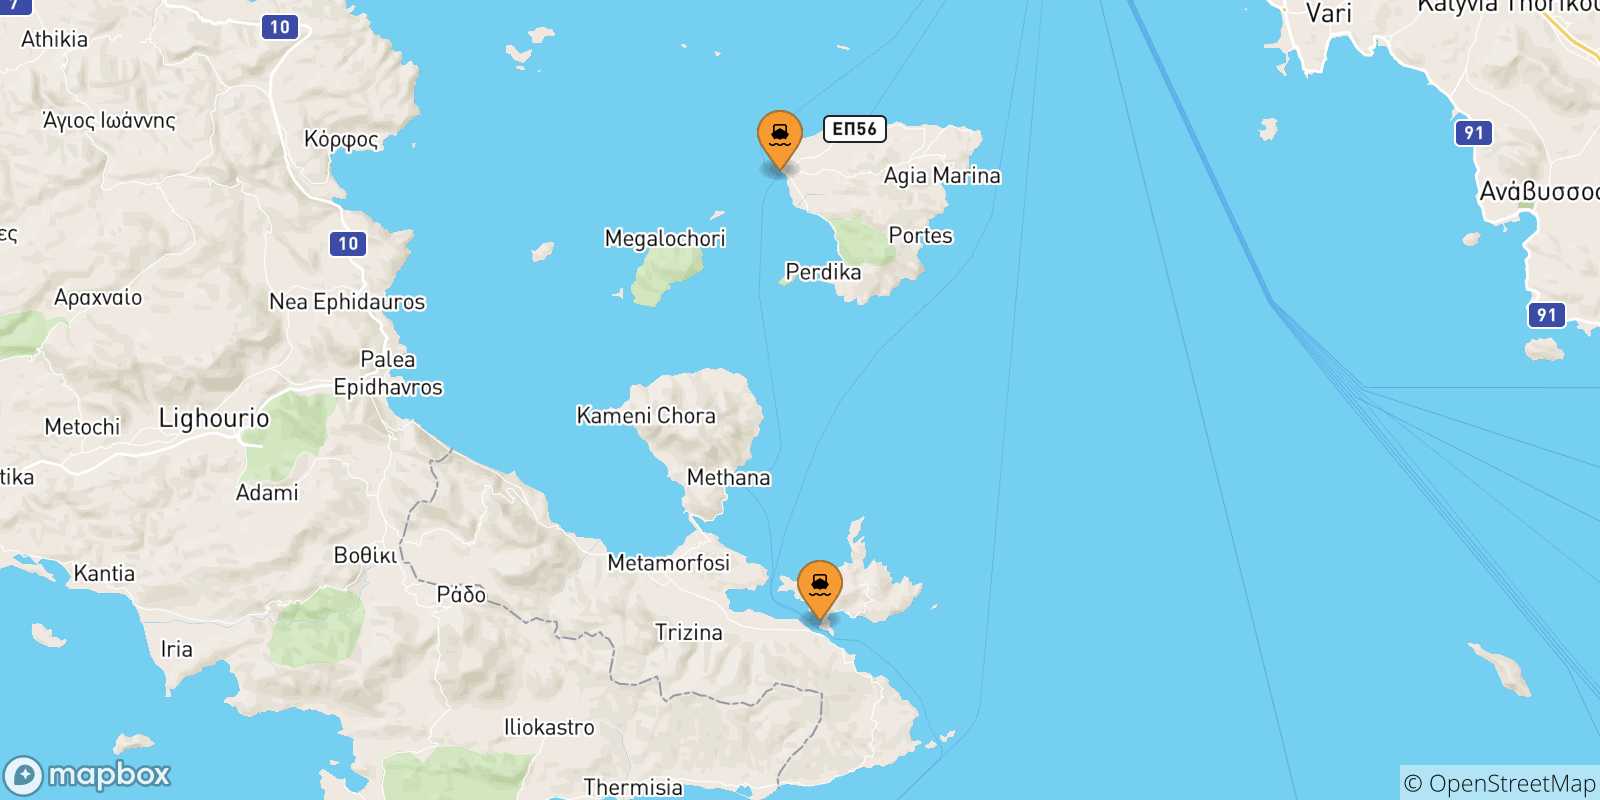 Mappa delle possibili rotte tra le Isole Saroniche e Methana